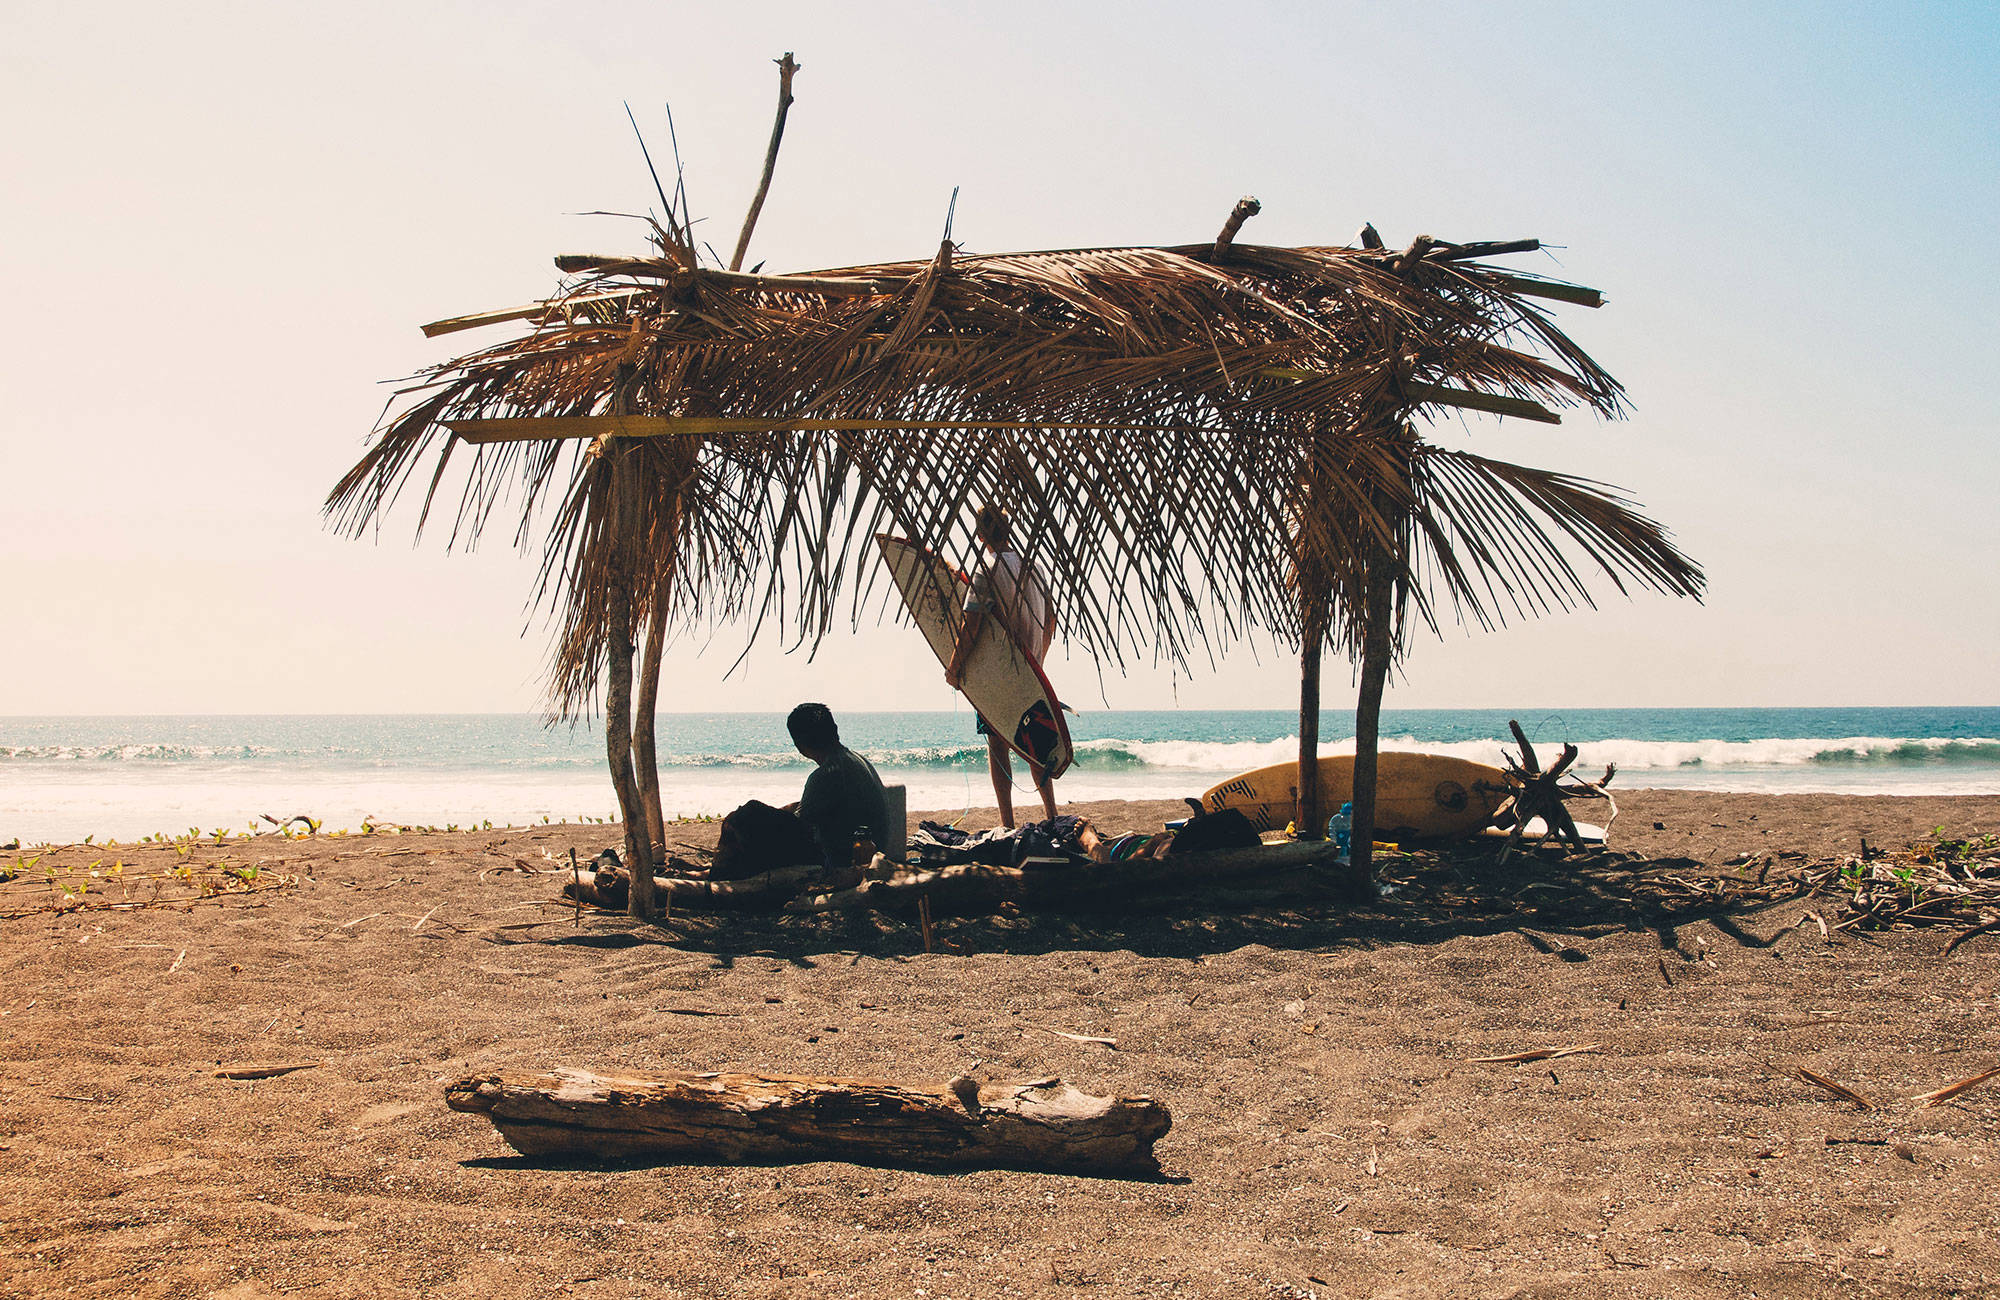 Njut av lata dagar på stranden i Costa Rica